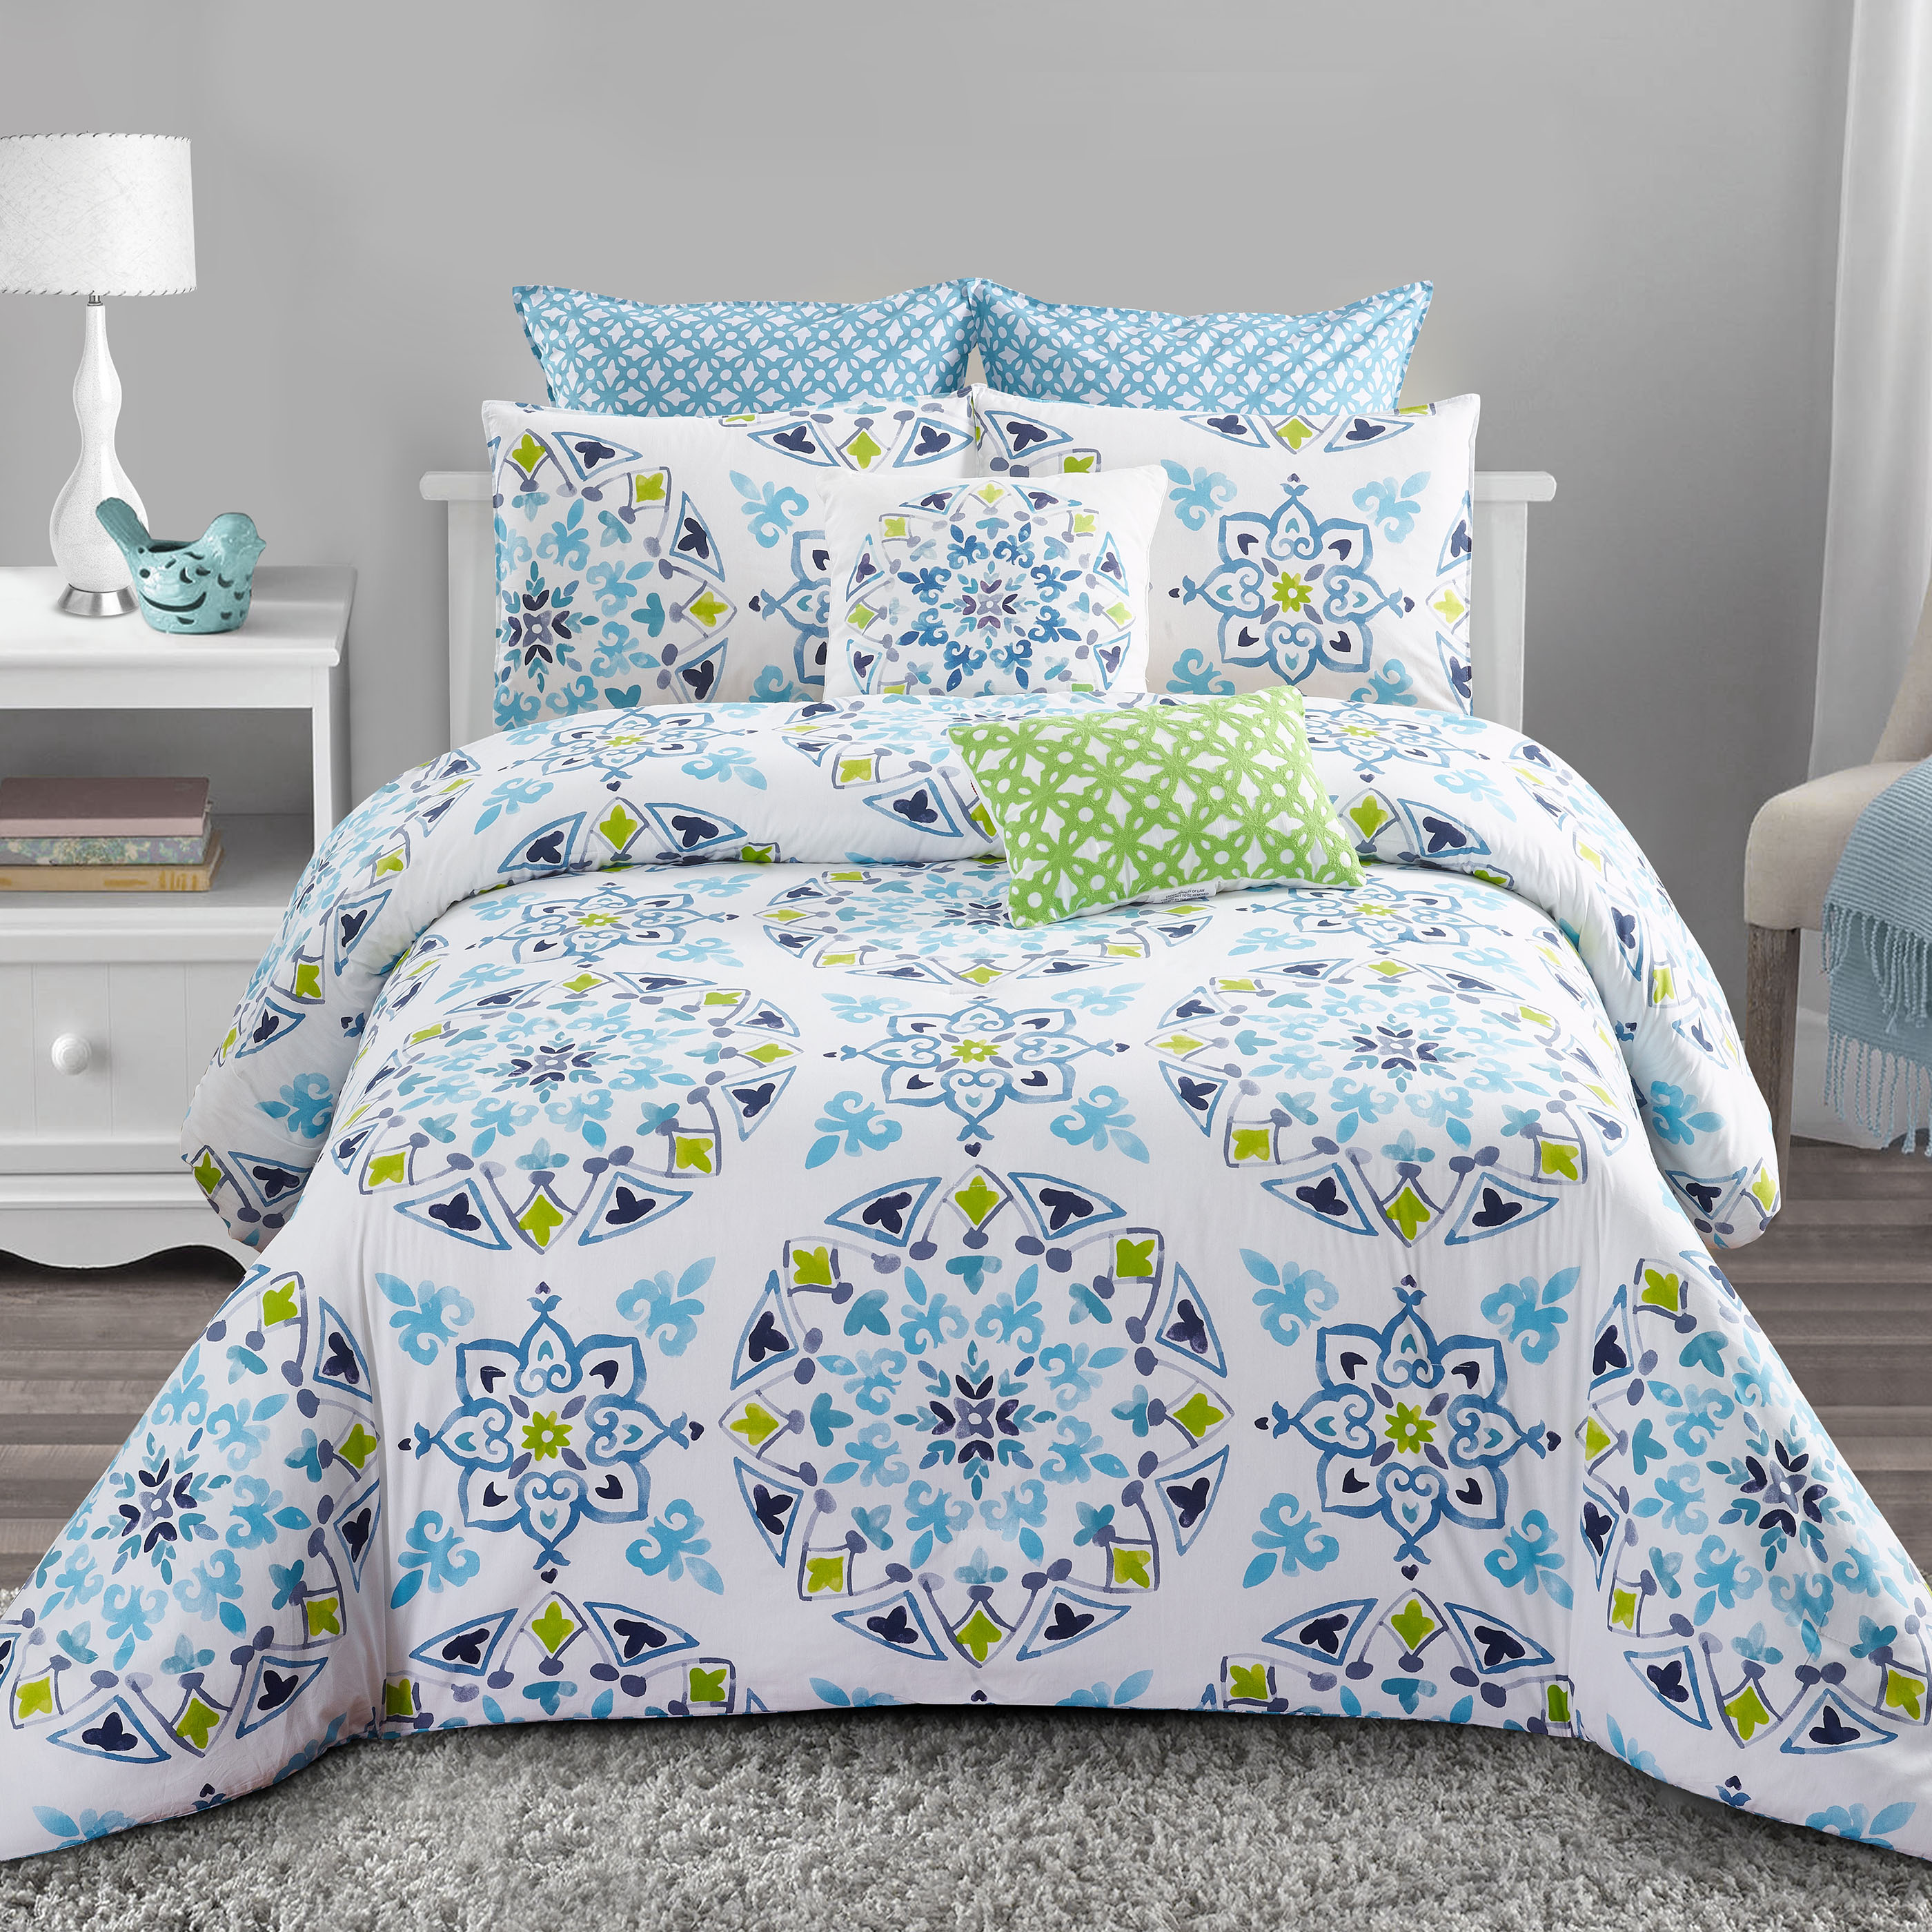 Blue Floral 4 Pcs Comforter Set Includes 1 Comforter, 2 Pillowcases an –  Style Quarters